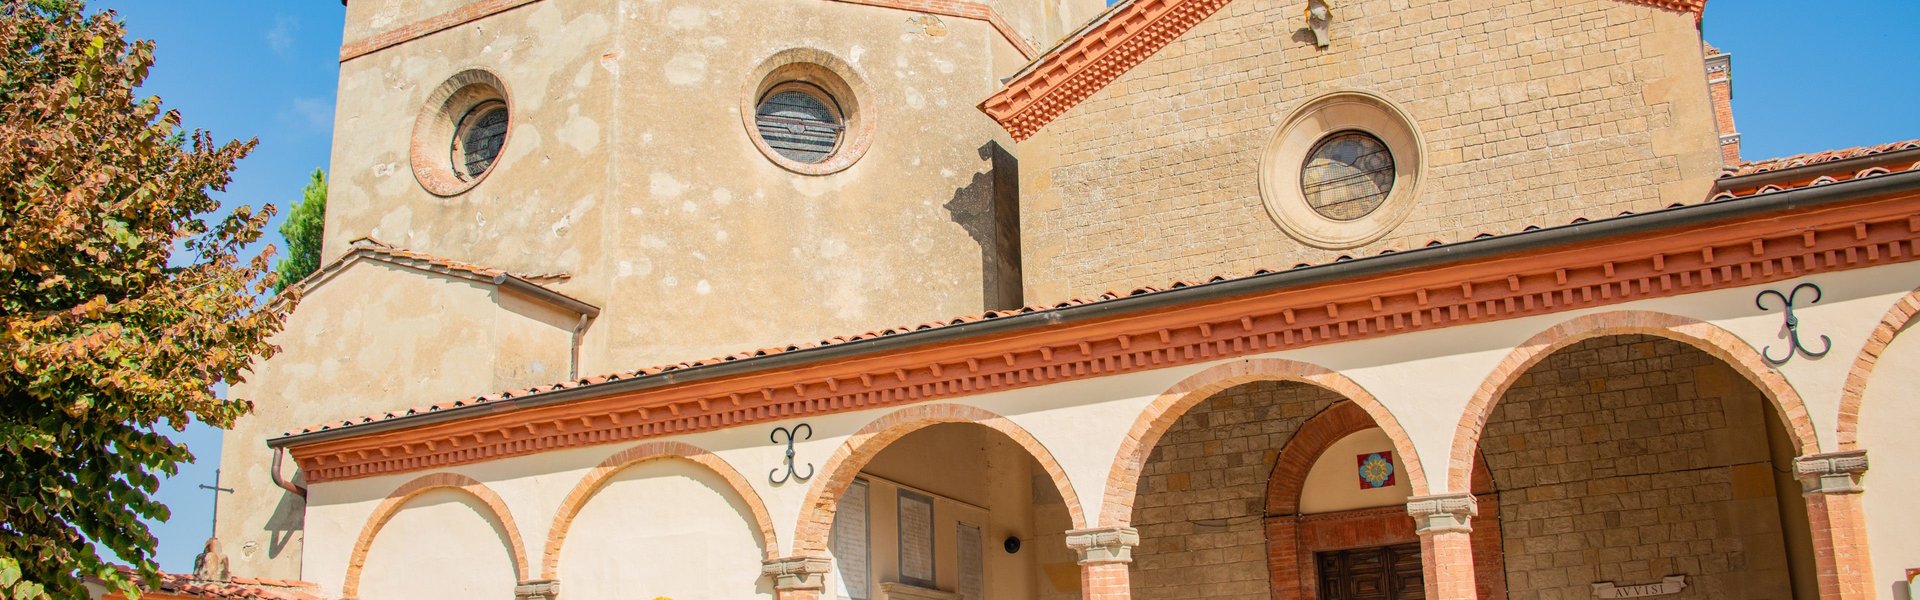 Convento di San Bernardino. Esterno